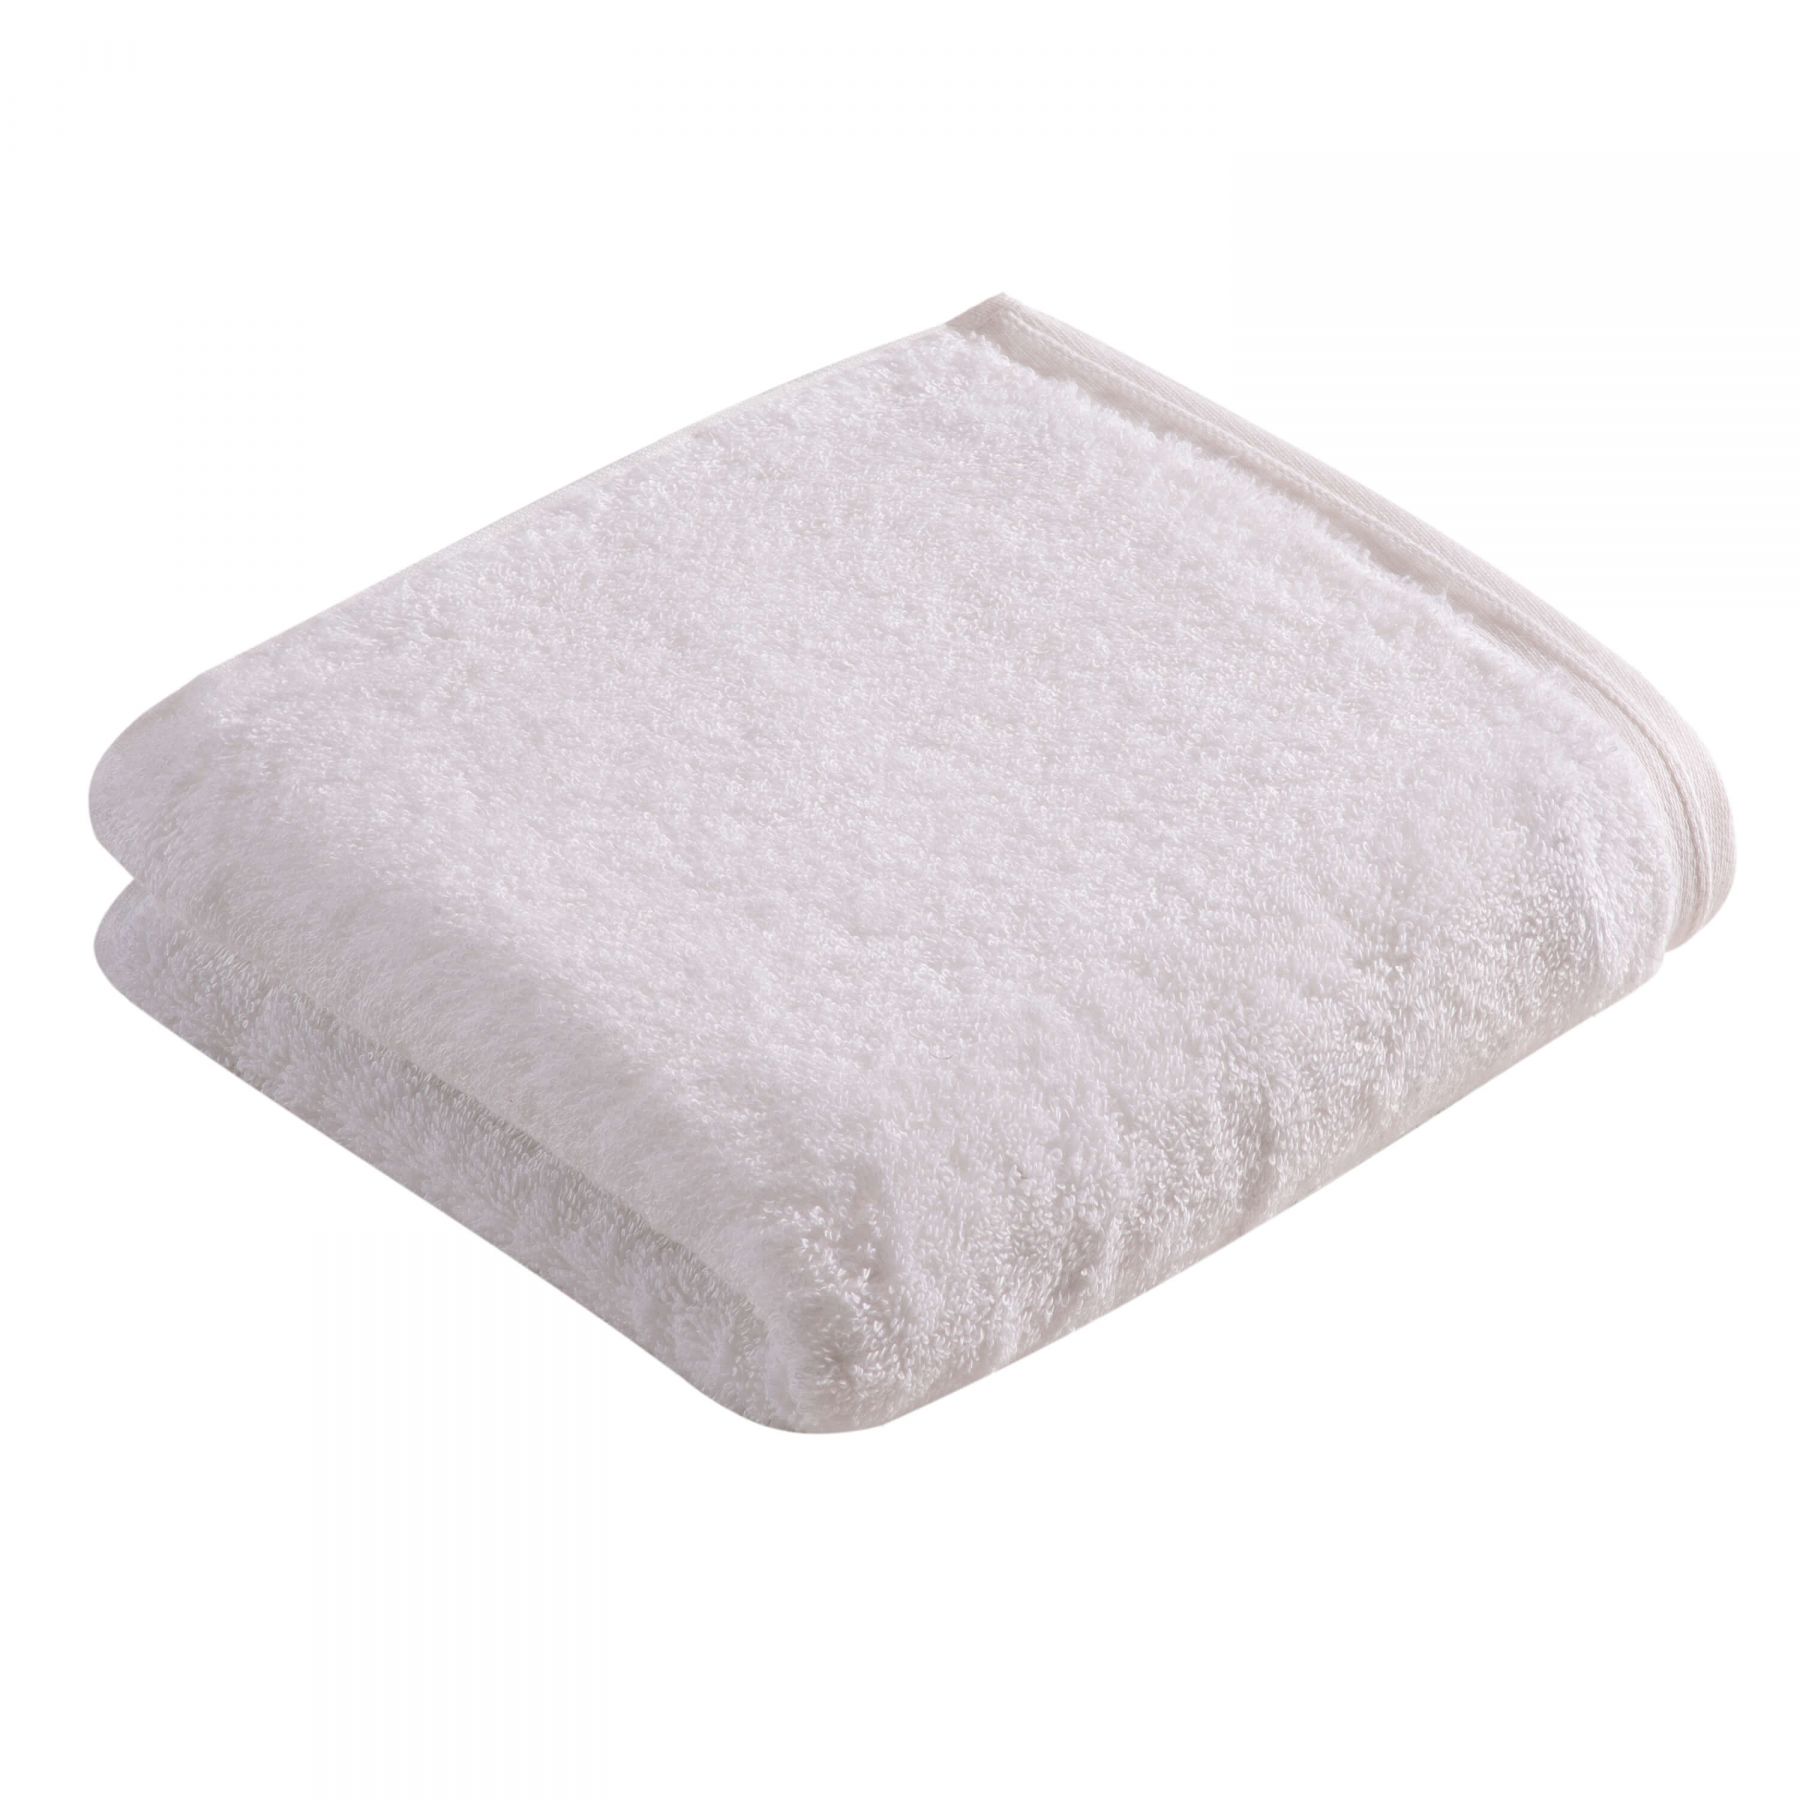 Элитное полотенце Vegan Life White ☞ Размер: 67 x 140 см